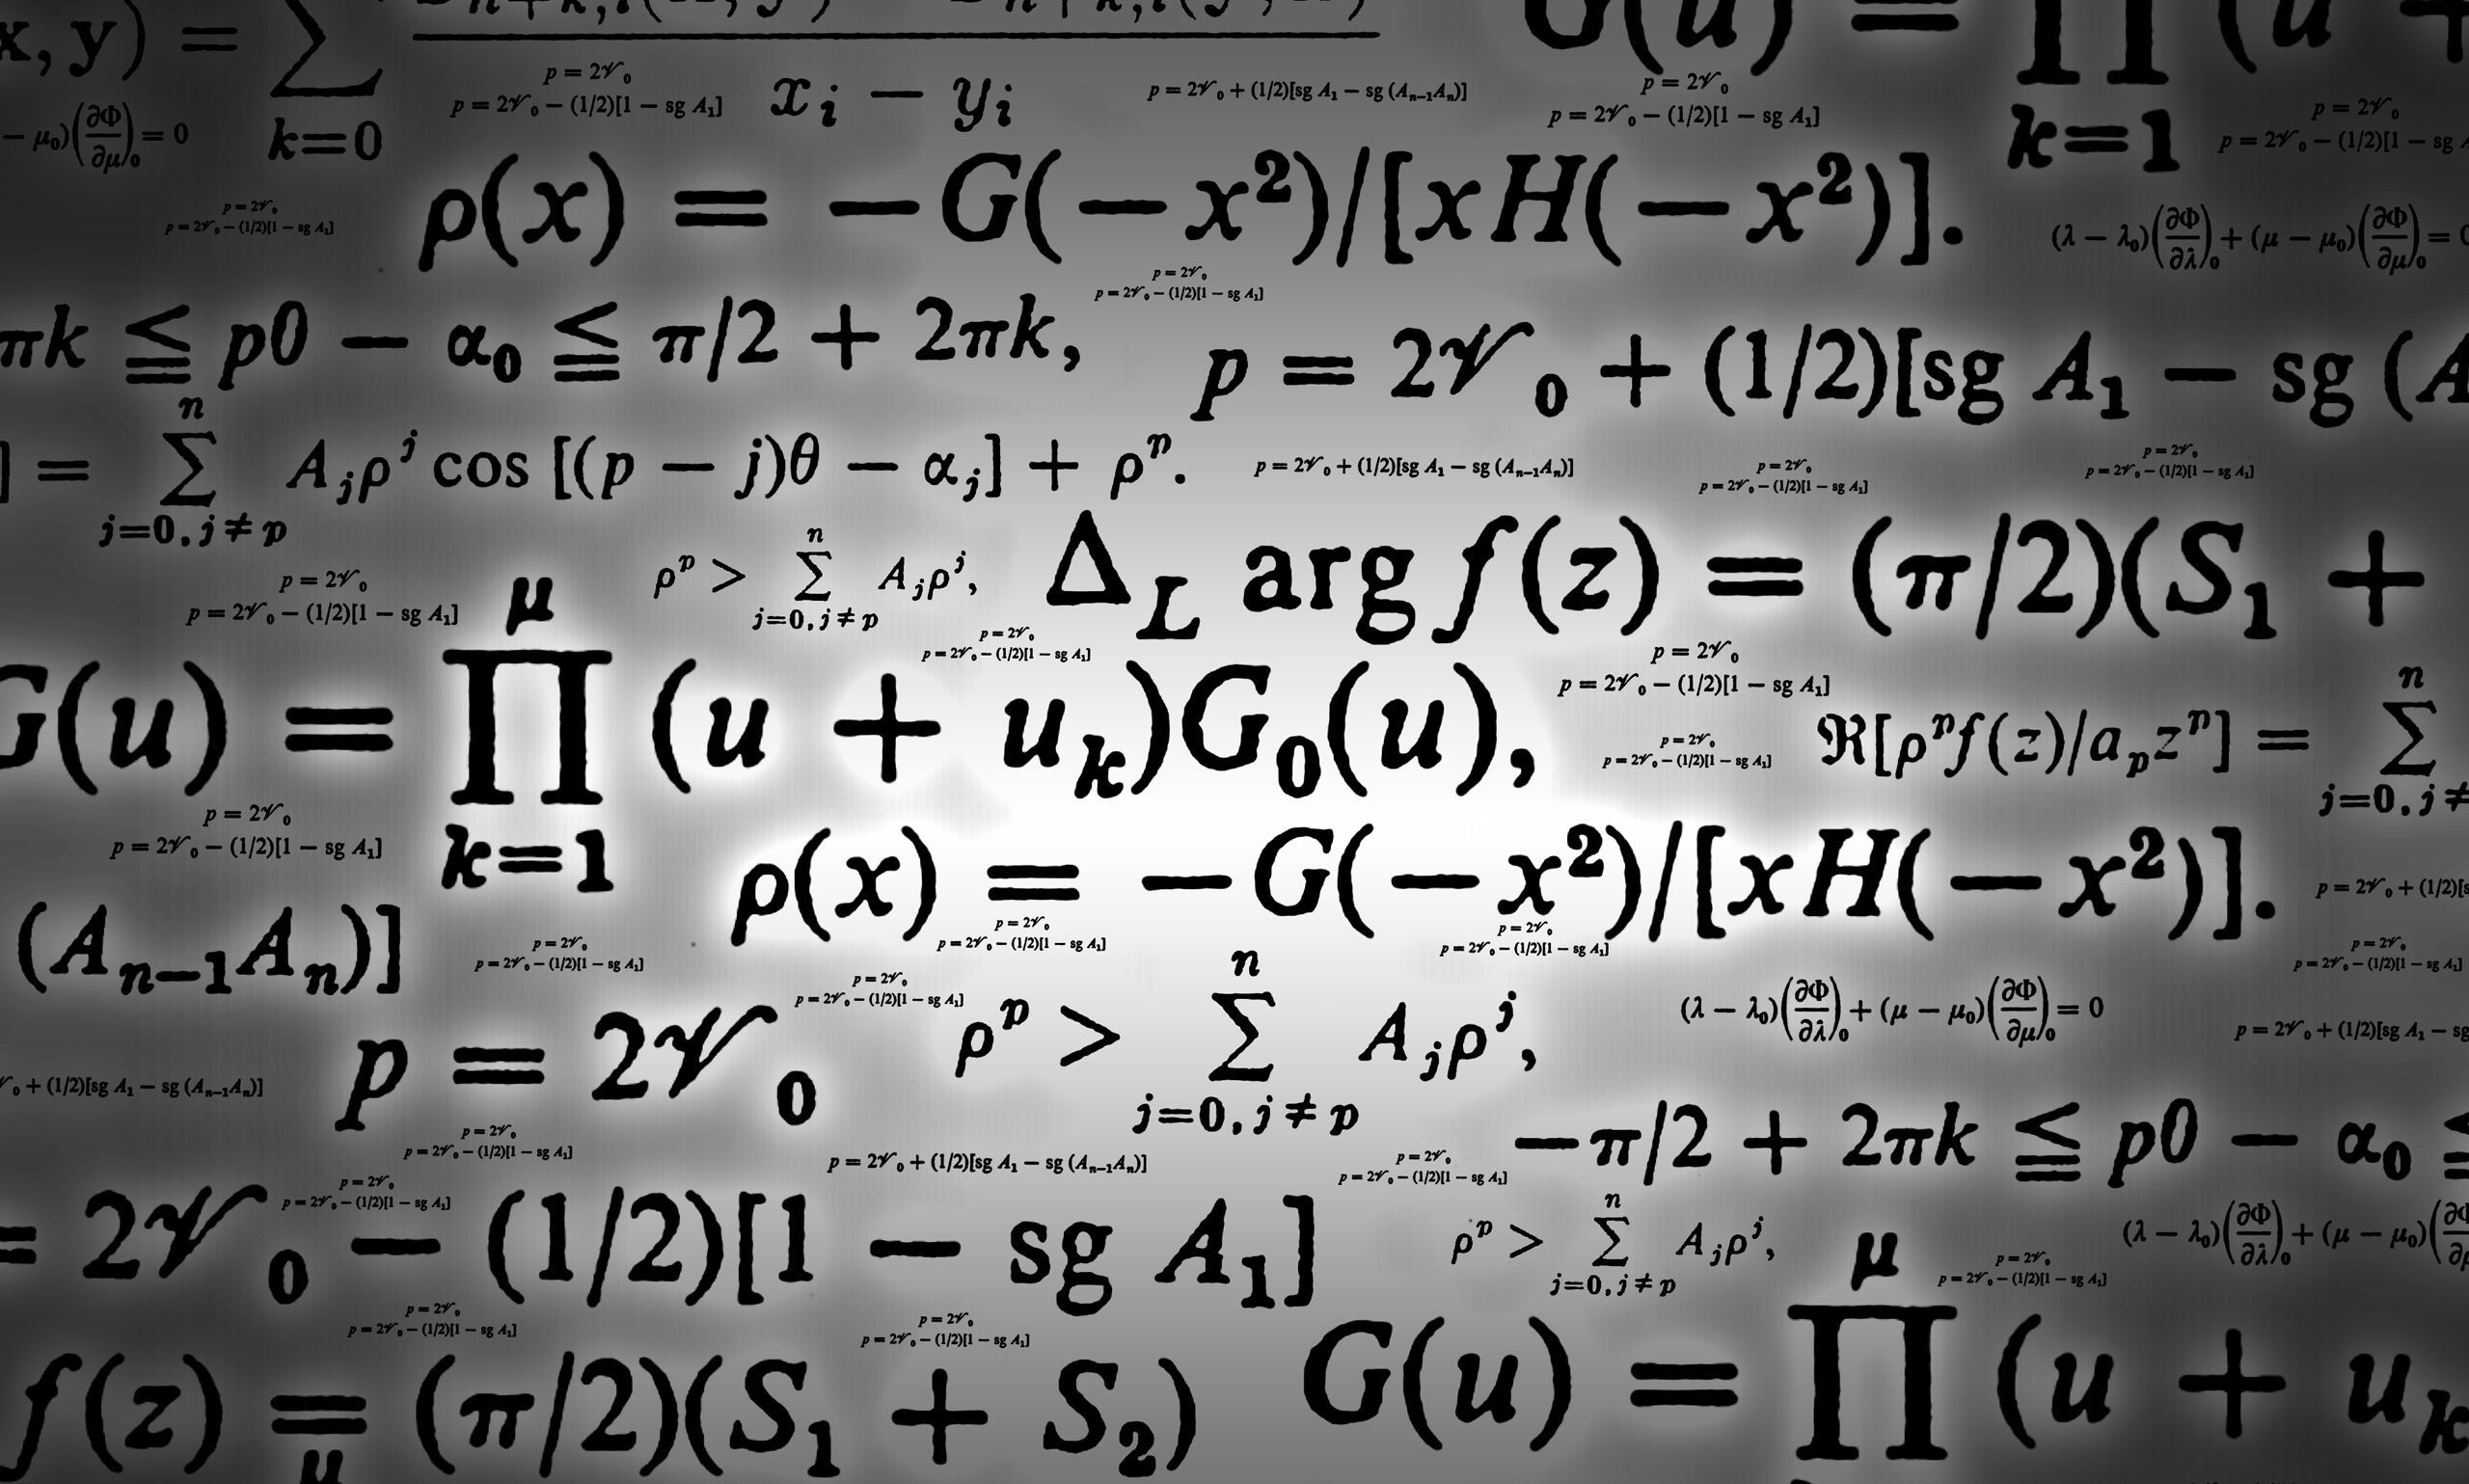 حل معادلات ریاضی در وان نوت ممکن شد